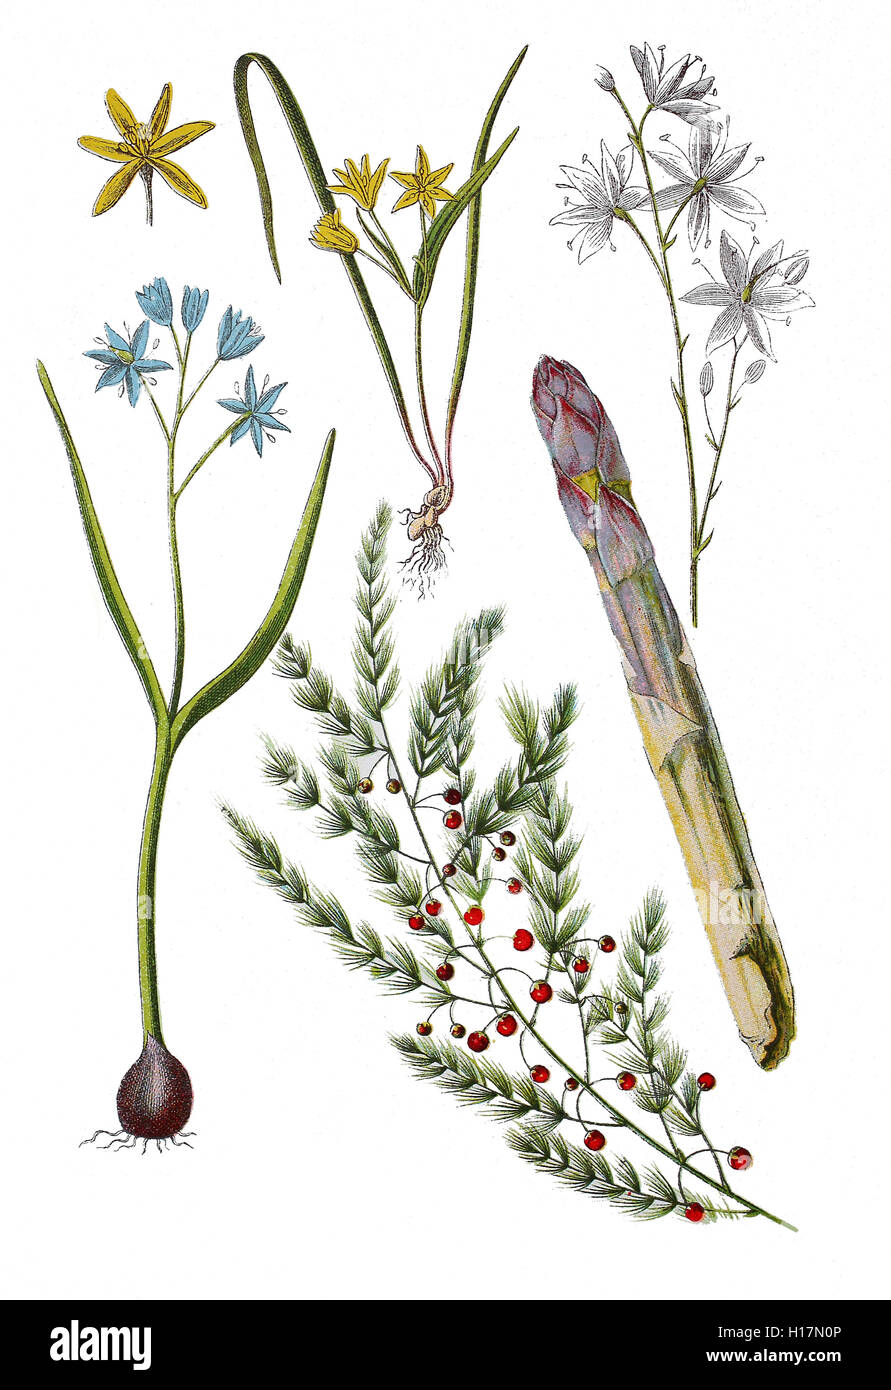 Zweiblaettriger Blaustern auch Sternhyazinthe oder Zweiblaettrige Meerzwiebel, Scilla bifolia (links unten), Spargel, Gemuesespargel oder Gemeiner Spargel, Asparagus officinalis (unten, Mitte und rechts),  Wiesen-Gelbstern oder Wiesen-Goldstern, Gagea pratensis (oben, mitte und links),  Rispige Graslilie auch Rispen-Graslilie, Kleine Graslilie oder Aestige Graslilie, Anthericum ramosum (oben rechts) Stock Photo